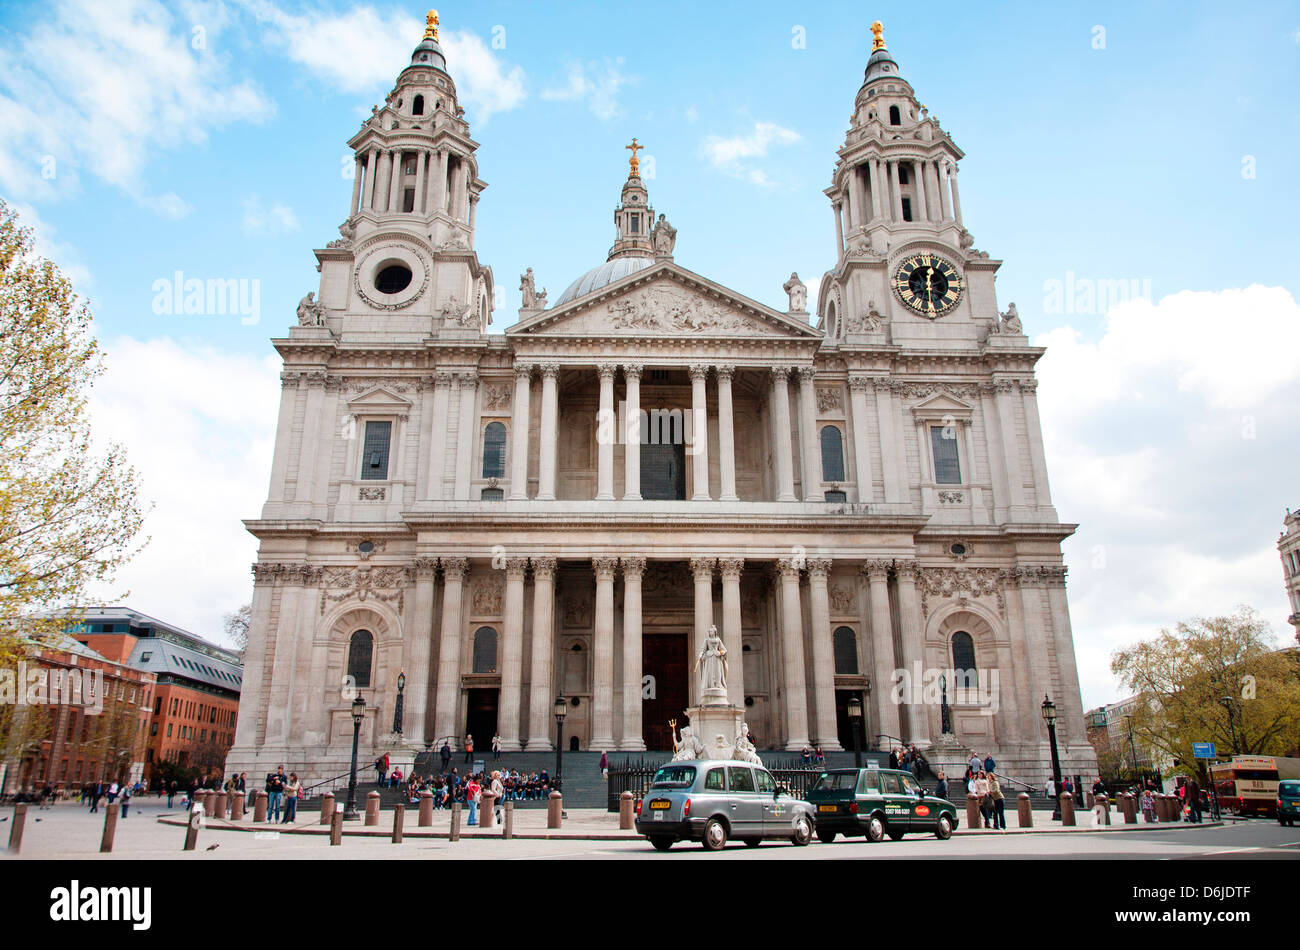 Entrée de la Cathédrale St Paul, Londres, Angleterre, Royaume-Uni, Europe Banque D'Images